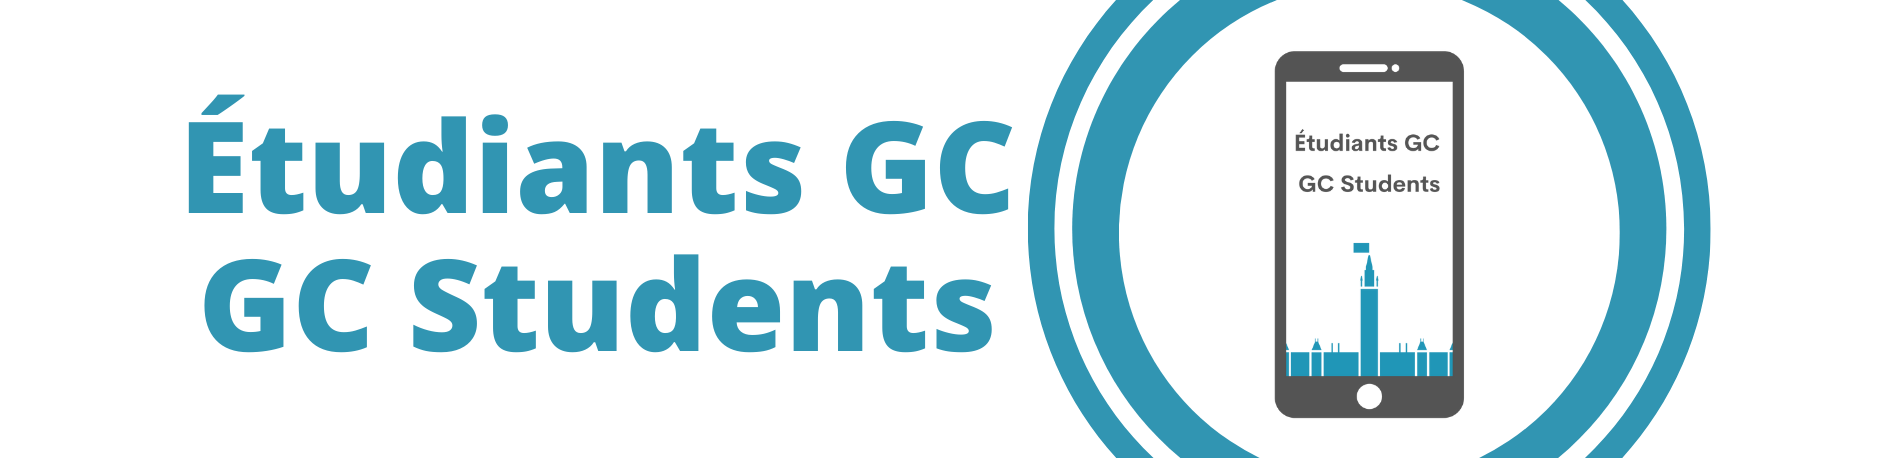 GC Students Logo Étudiants GC